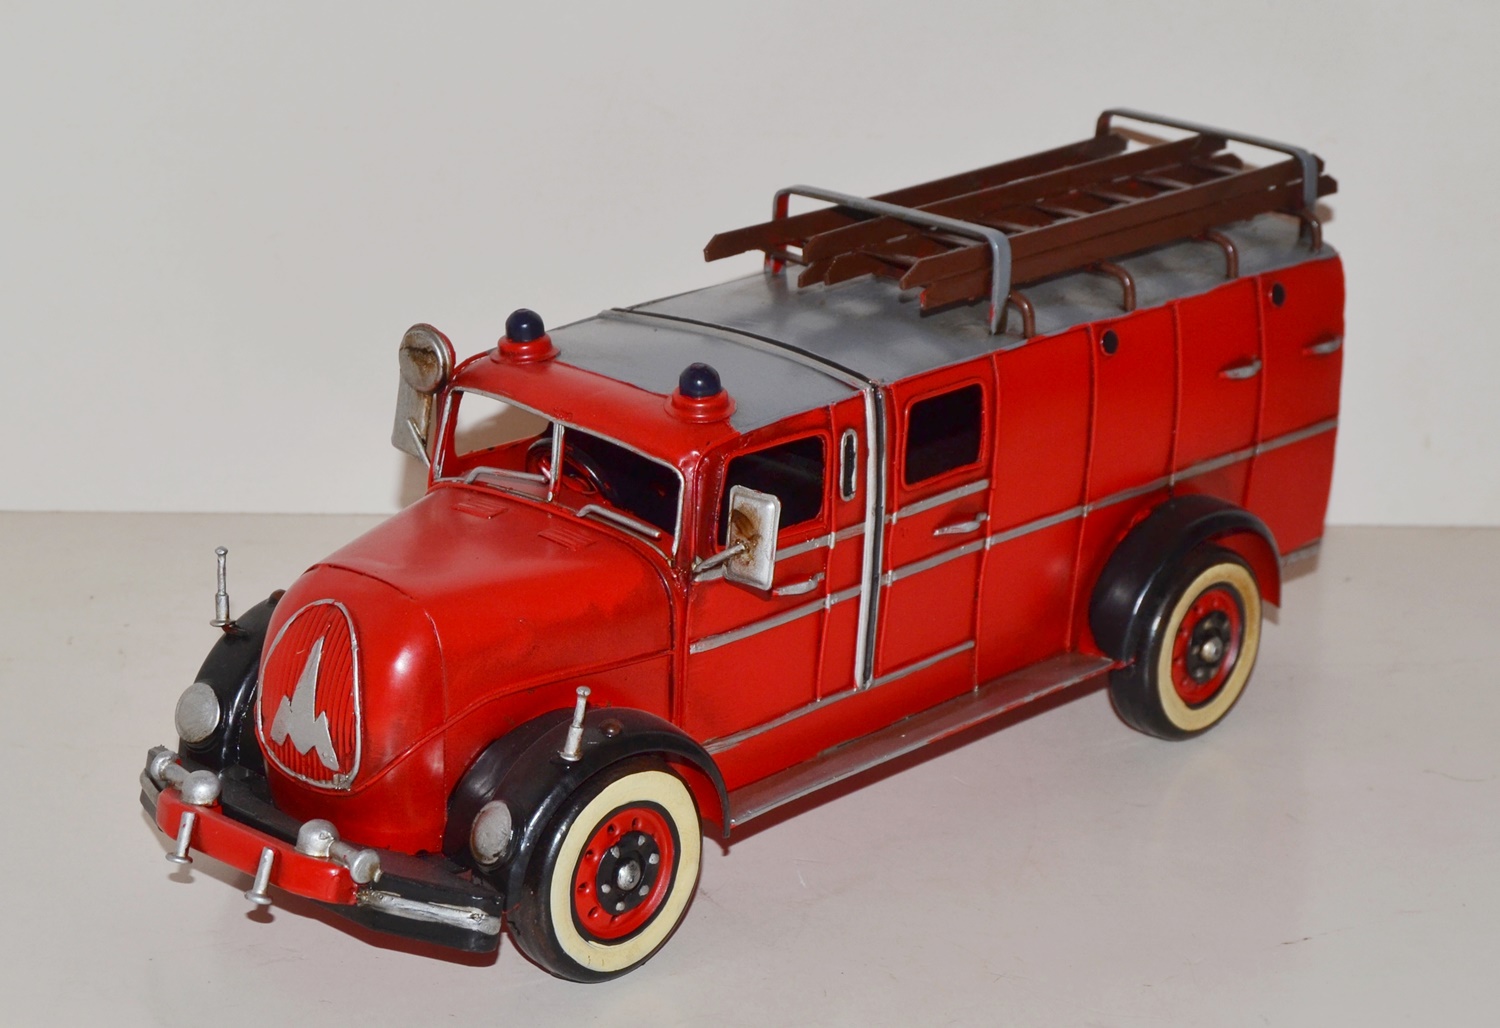 Feuerwehrauto Modellfahrzeug Feuerwehr Modell Auto Blech Antik